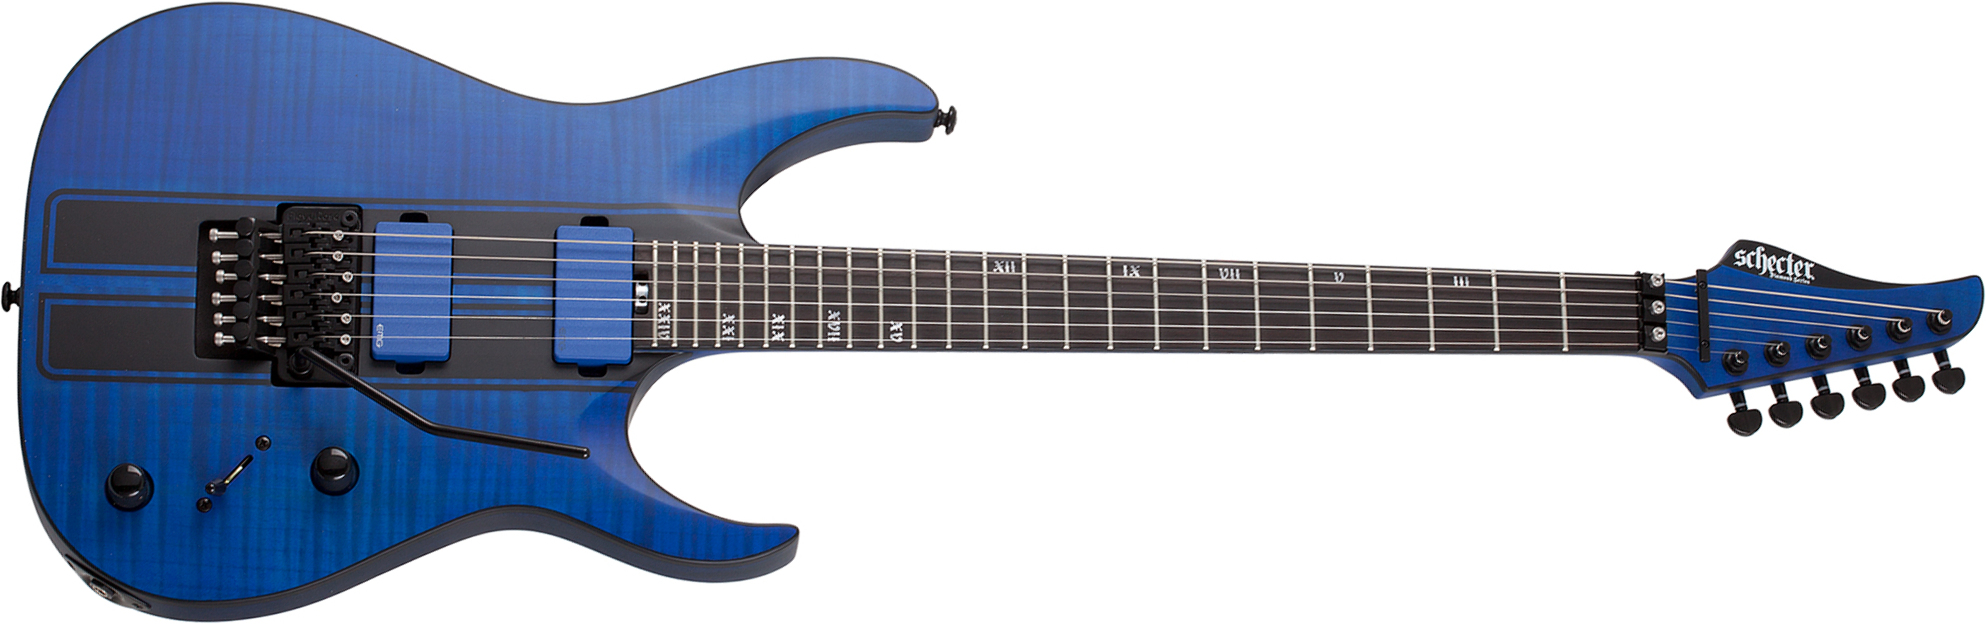 Schecter Banshee Gt Fr 2h Emg Eb - Satin Trans Blue - E-Gitarre in Str-Form - Main picture